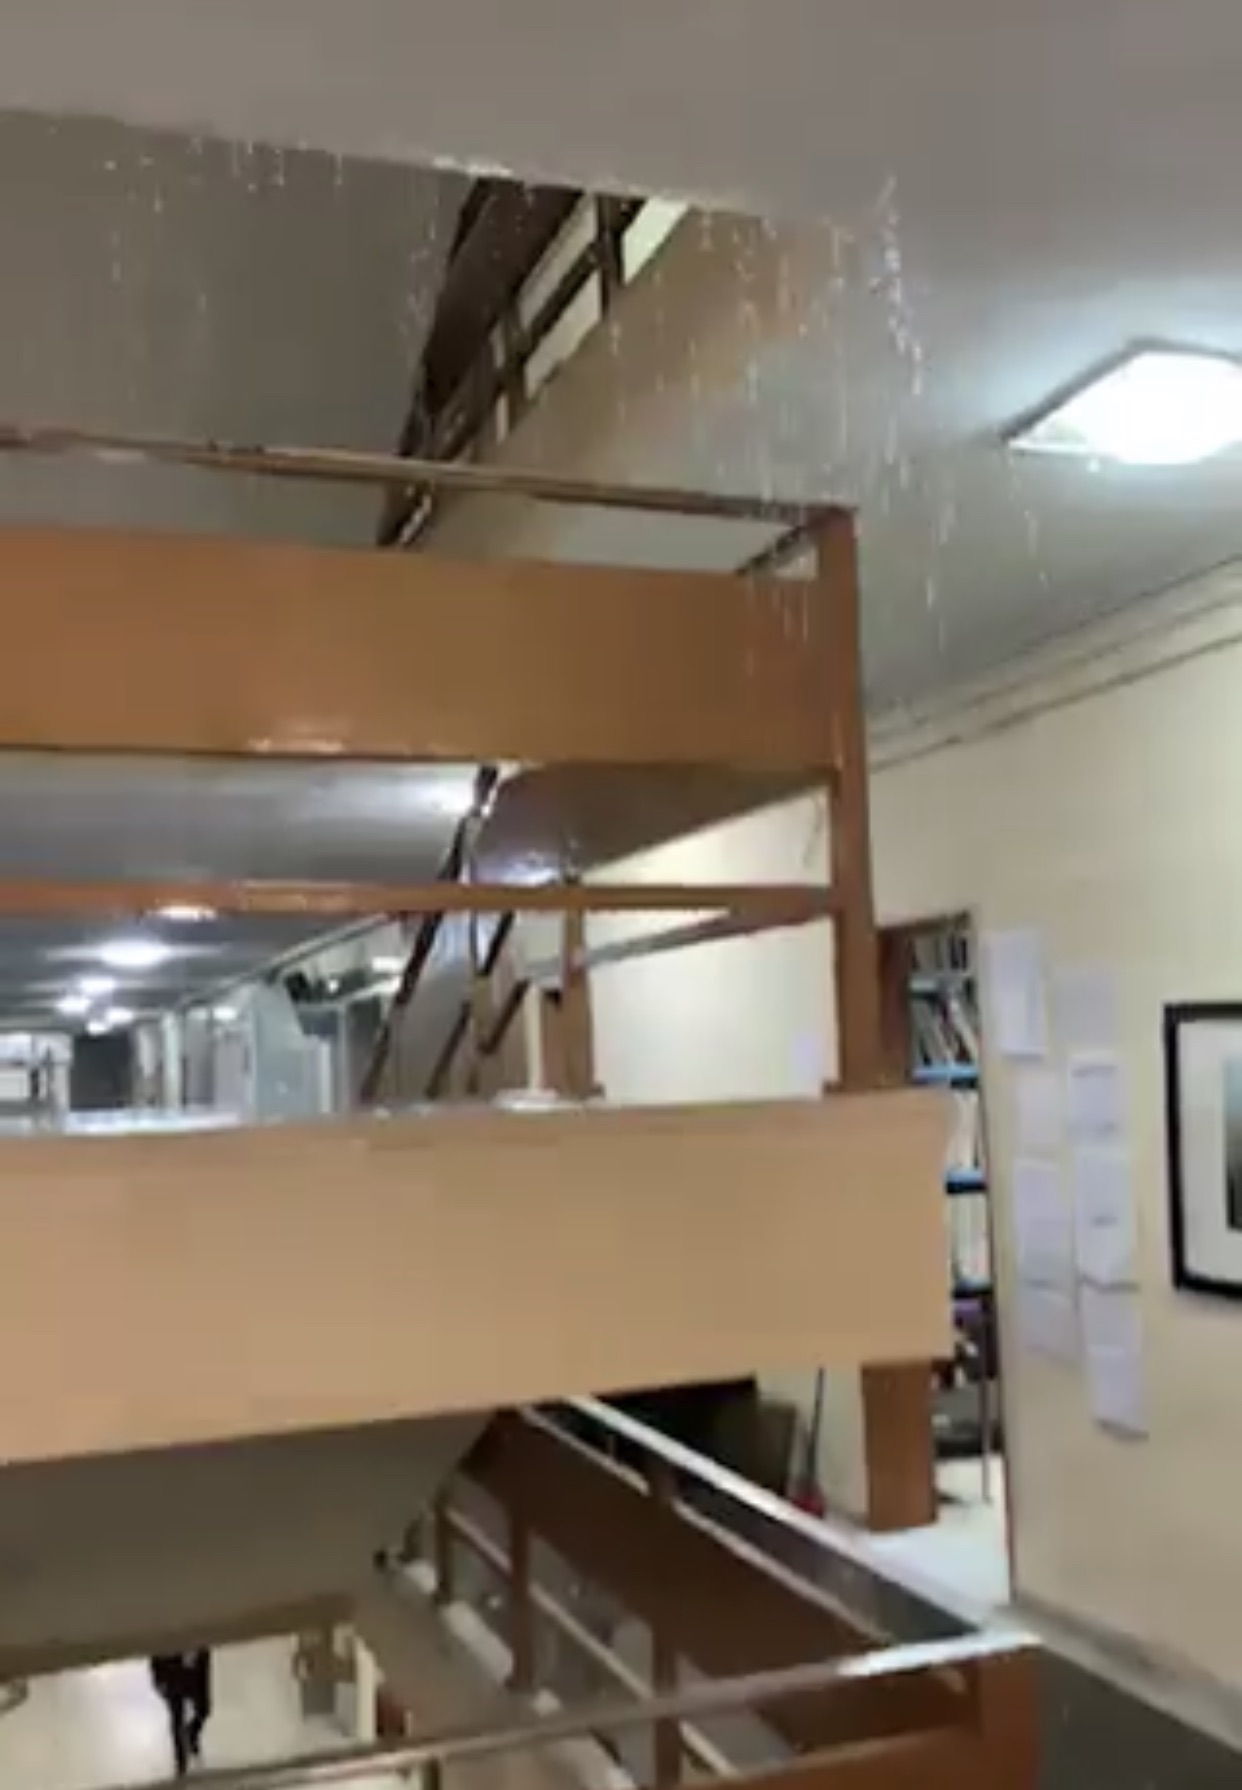 Απίστευτο βίντεο: Βρέχει... μέσα στο Δικαστικό Μέγαρο της Λάρισας!